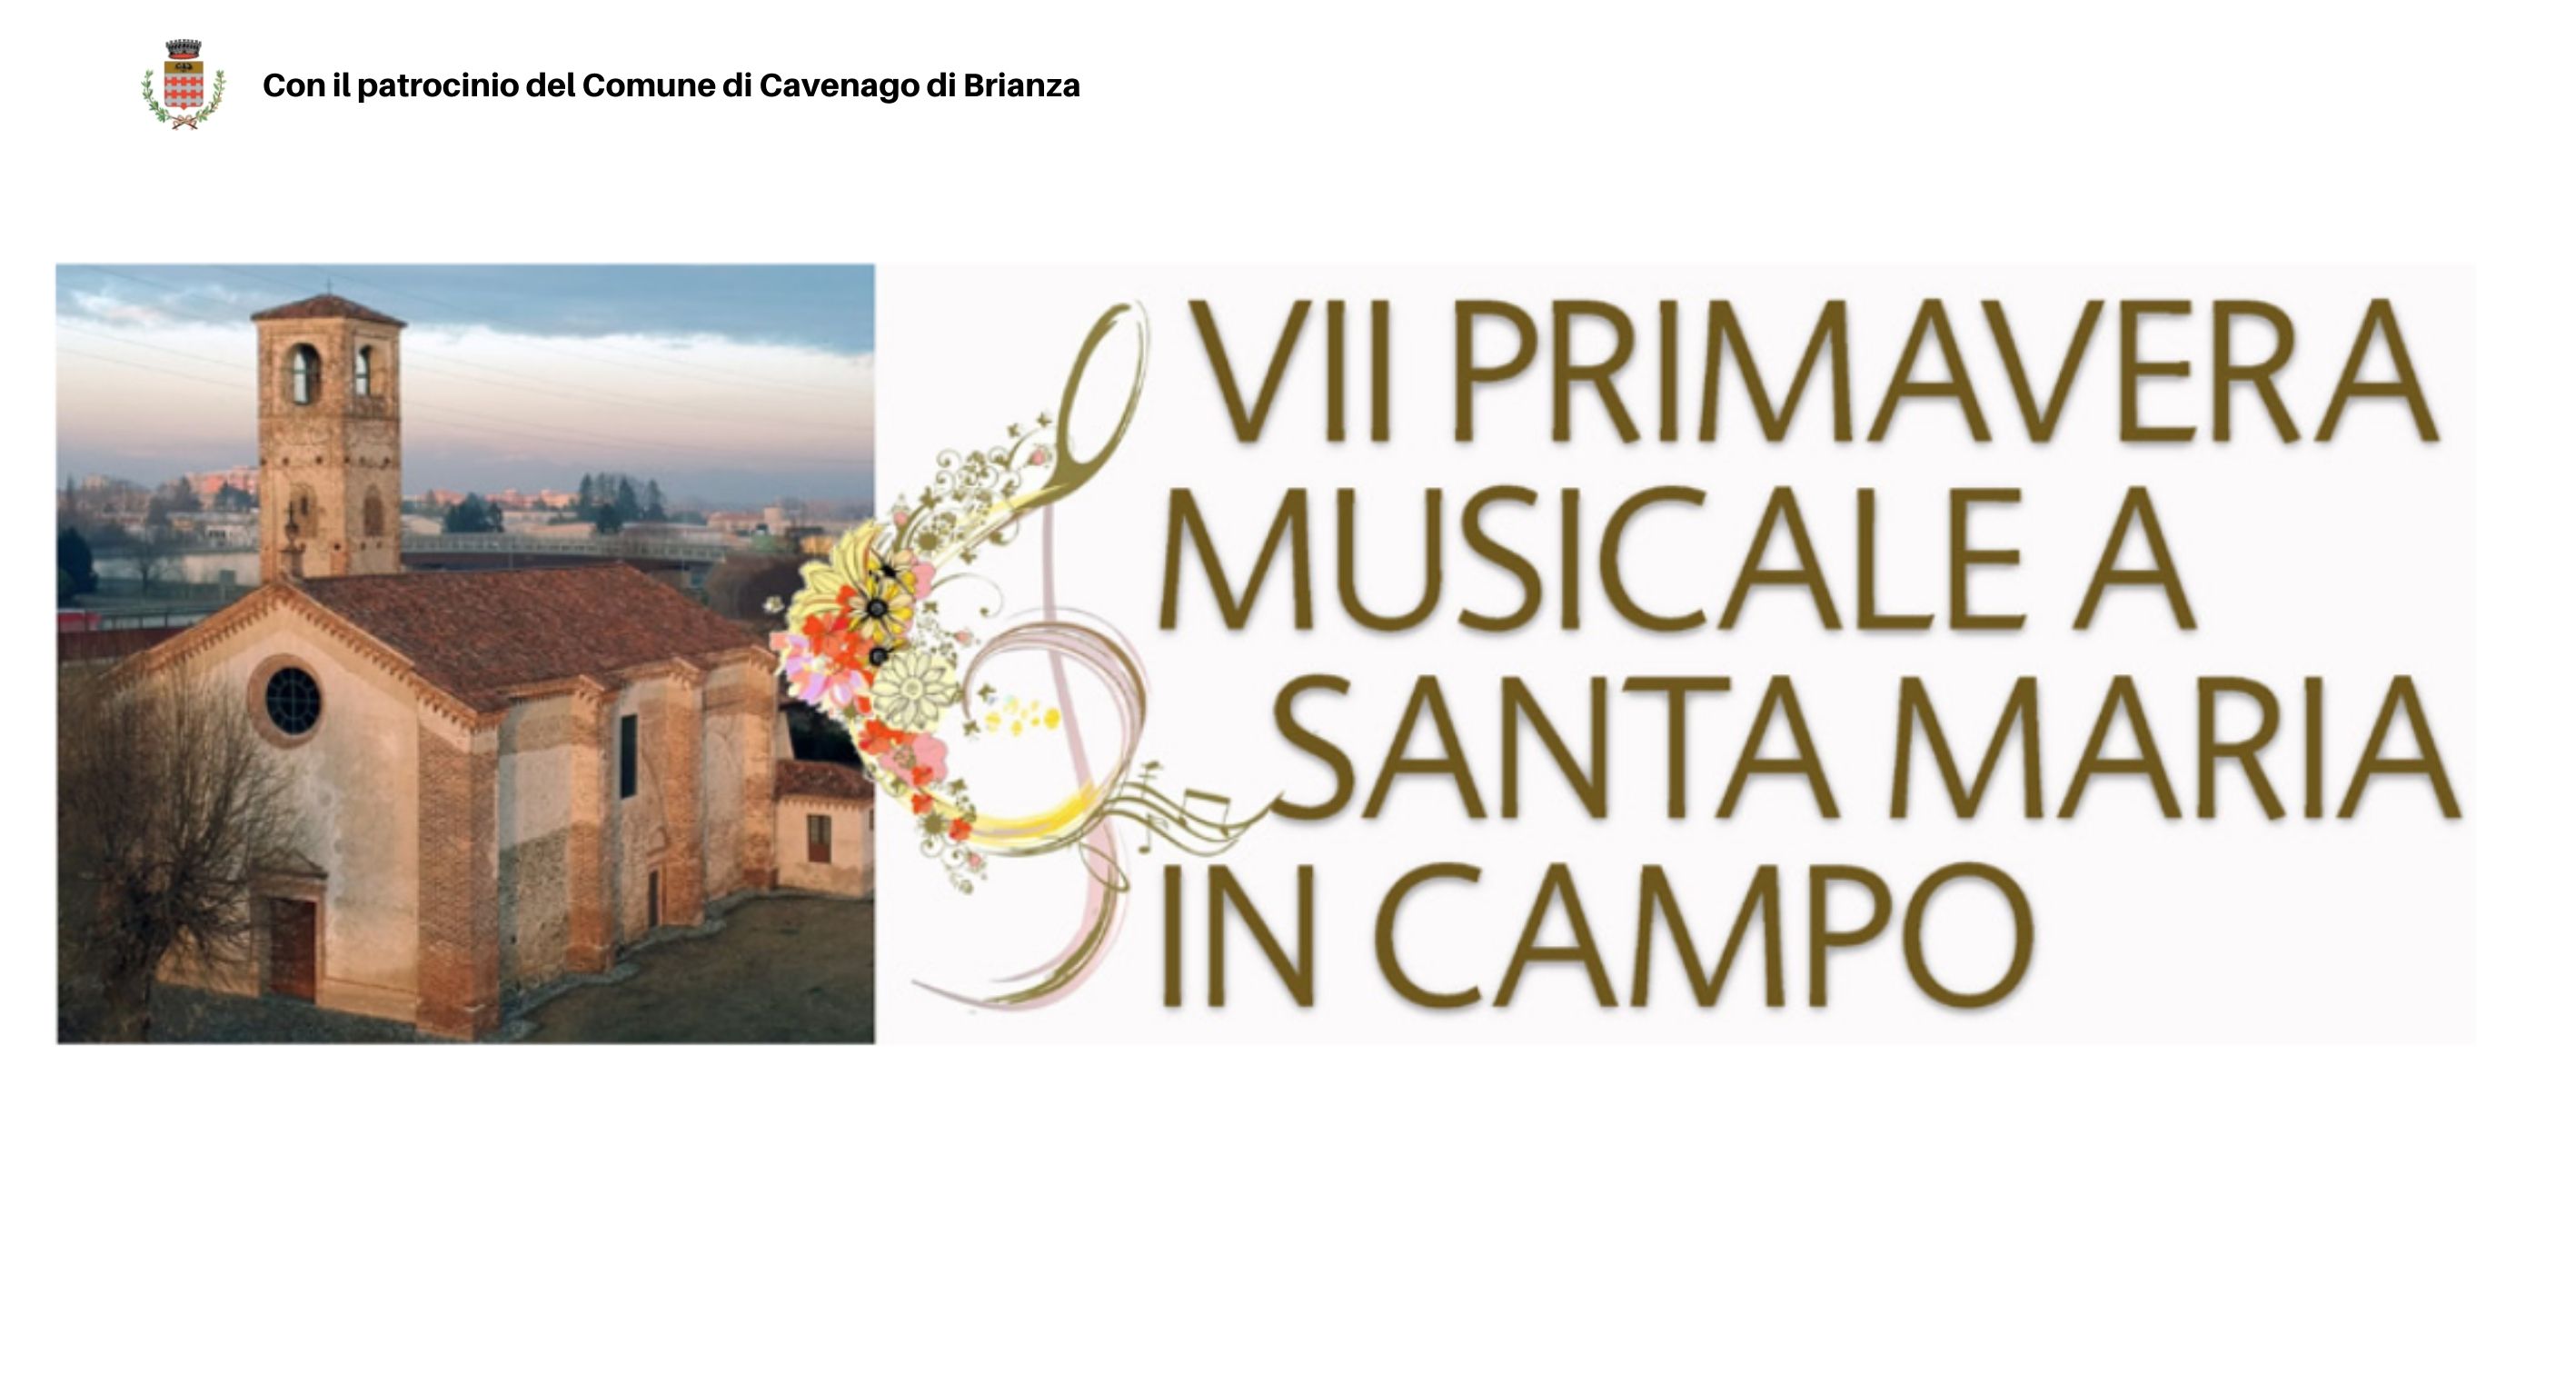 VII PRIMAVERA MUSICALE A SANTA MARIA IN CAMPO